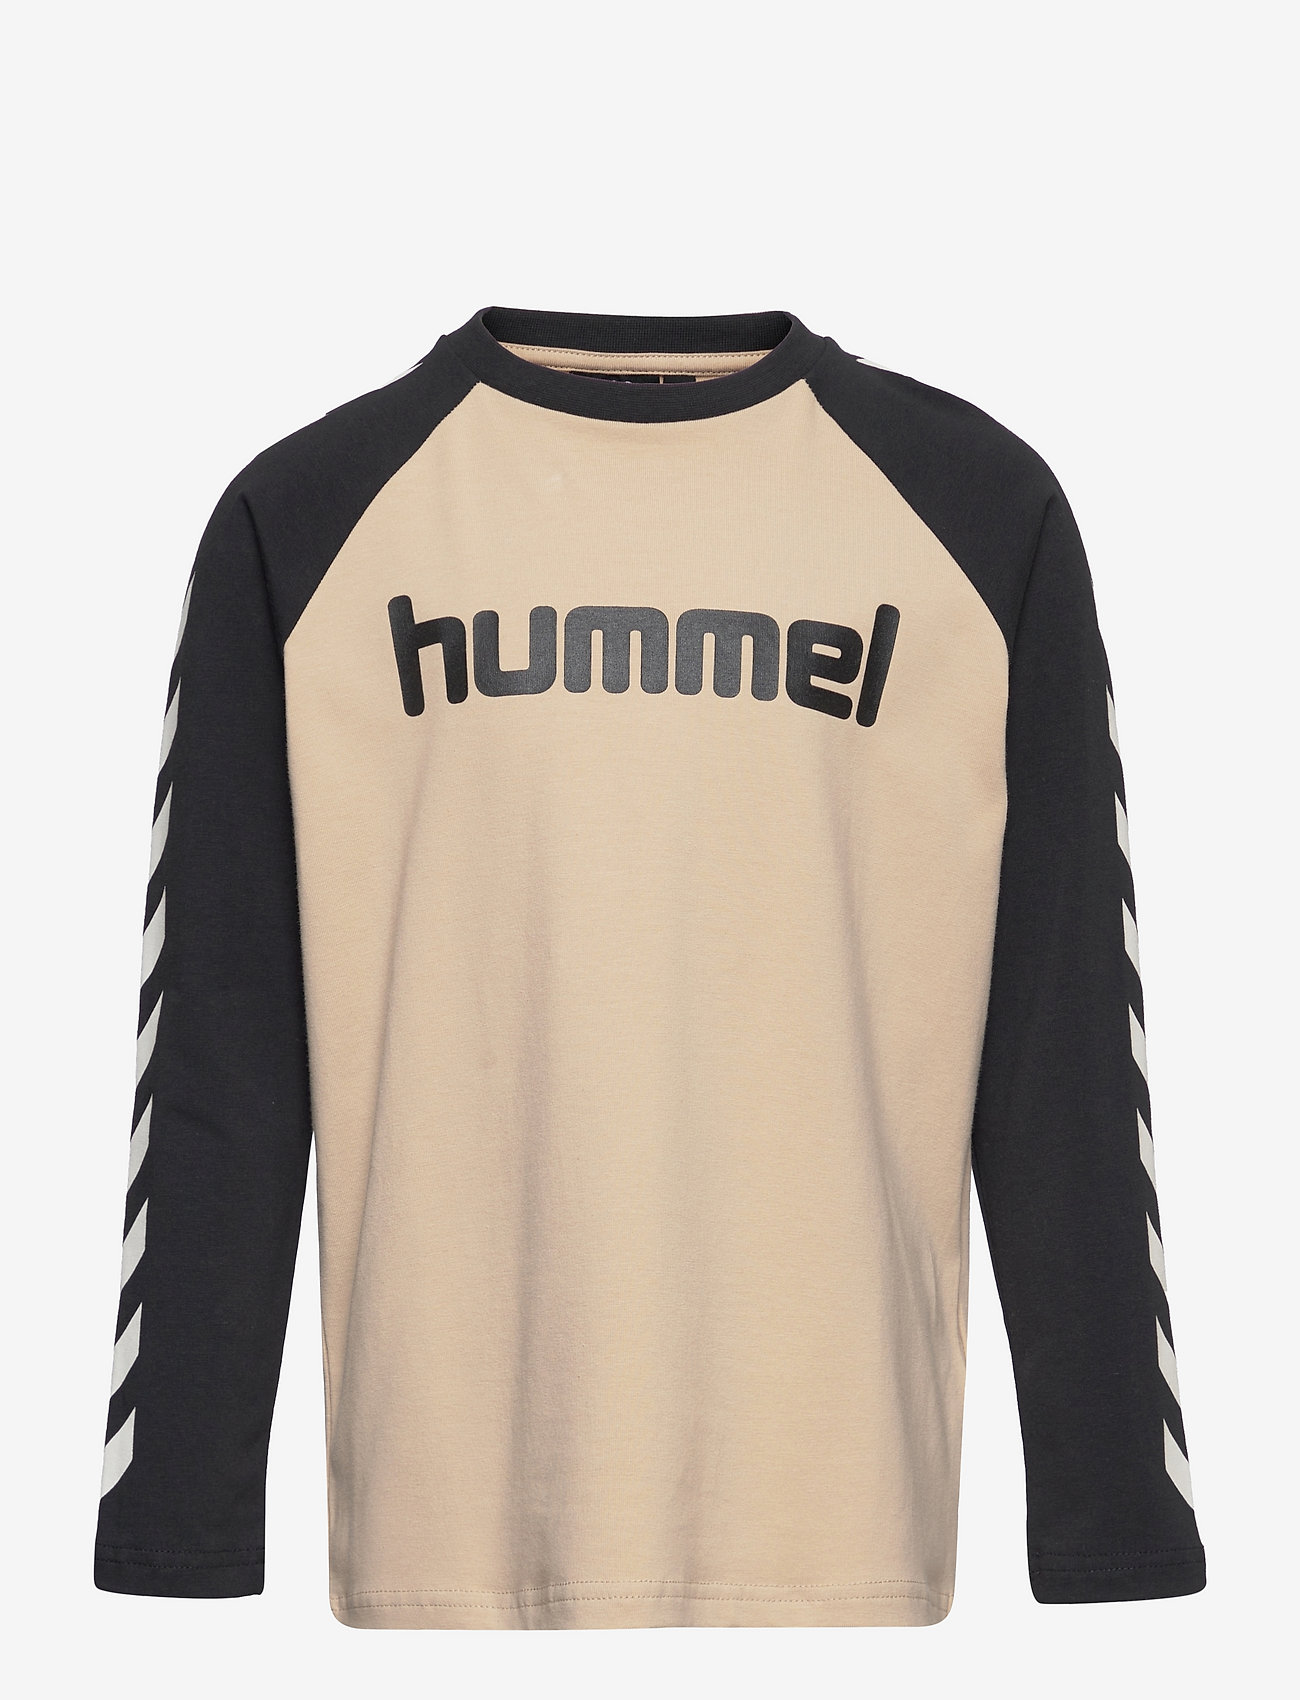 Hummel - hmlBOYS T-SHIRT L/S - långärmade - humus - 0